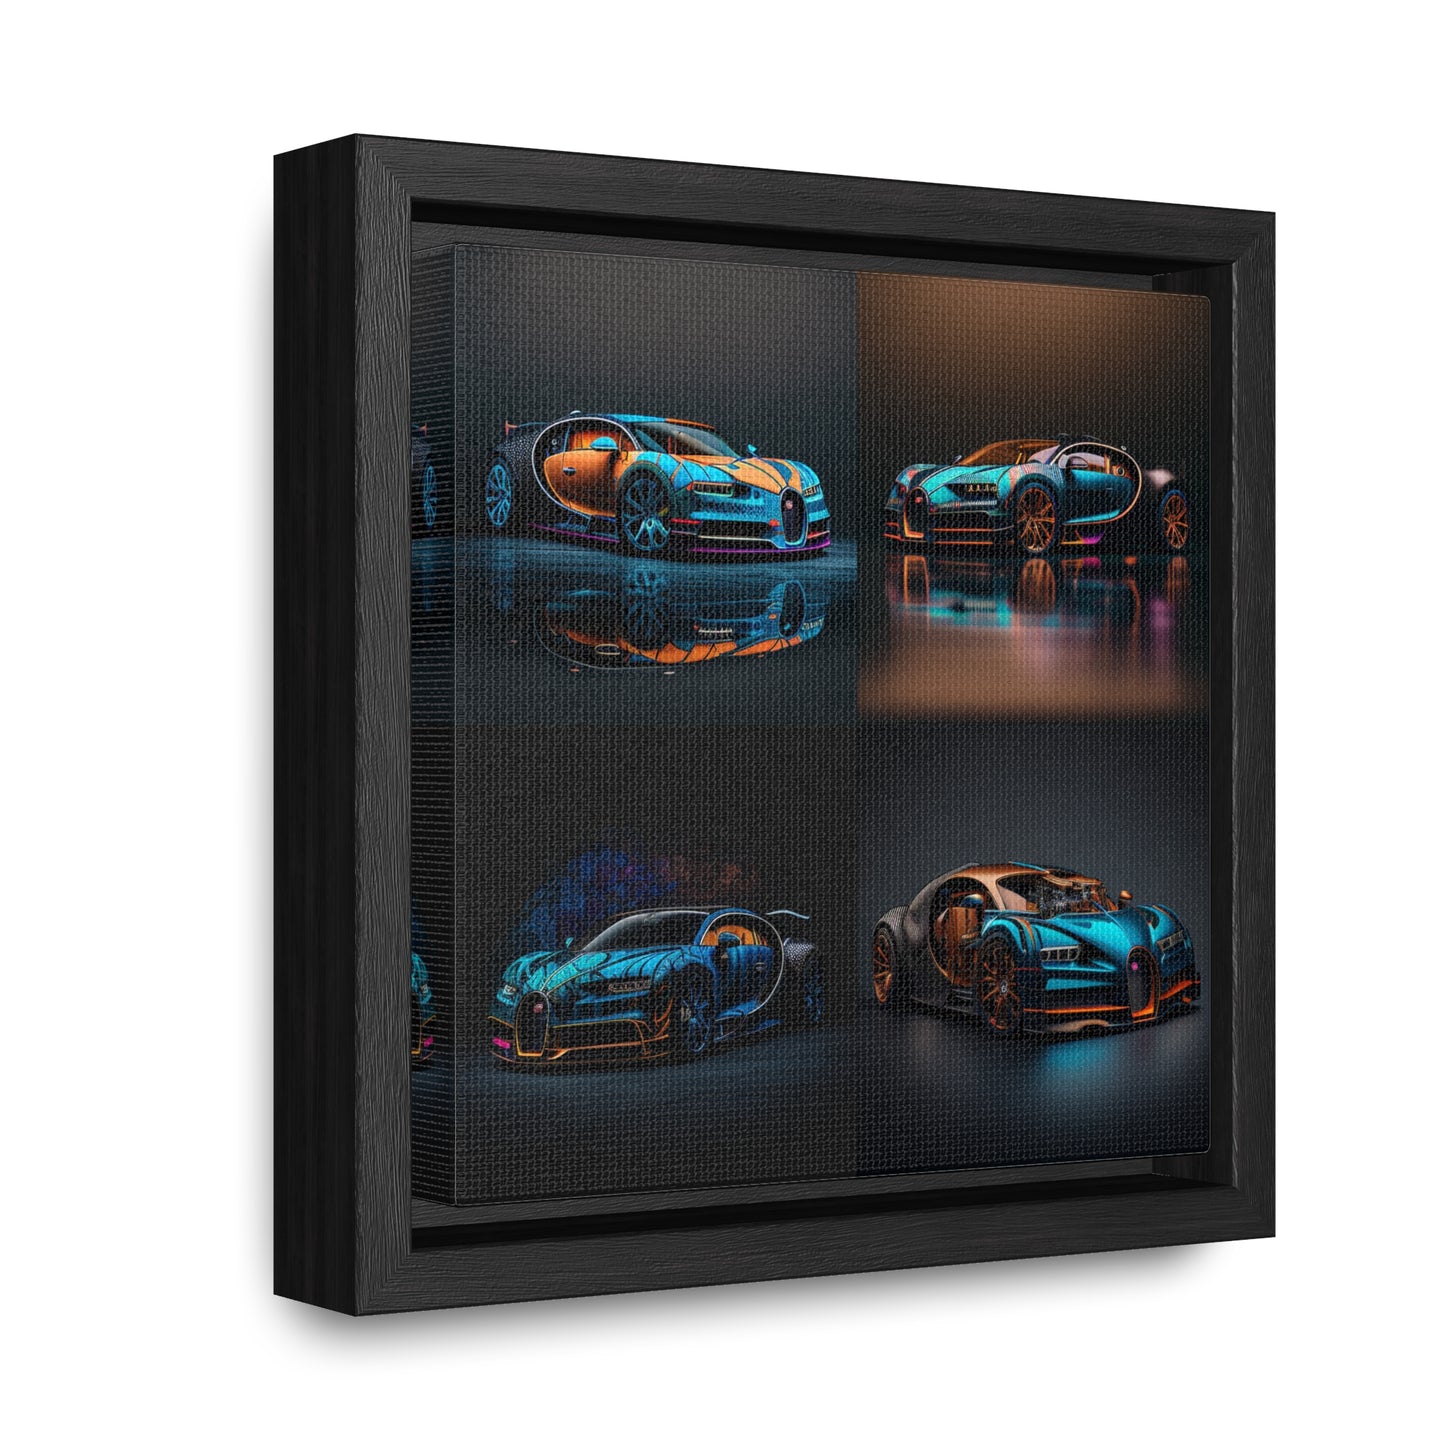 Gallery Canvas Wraps, Square Frame Bugatti Blue 5